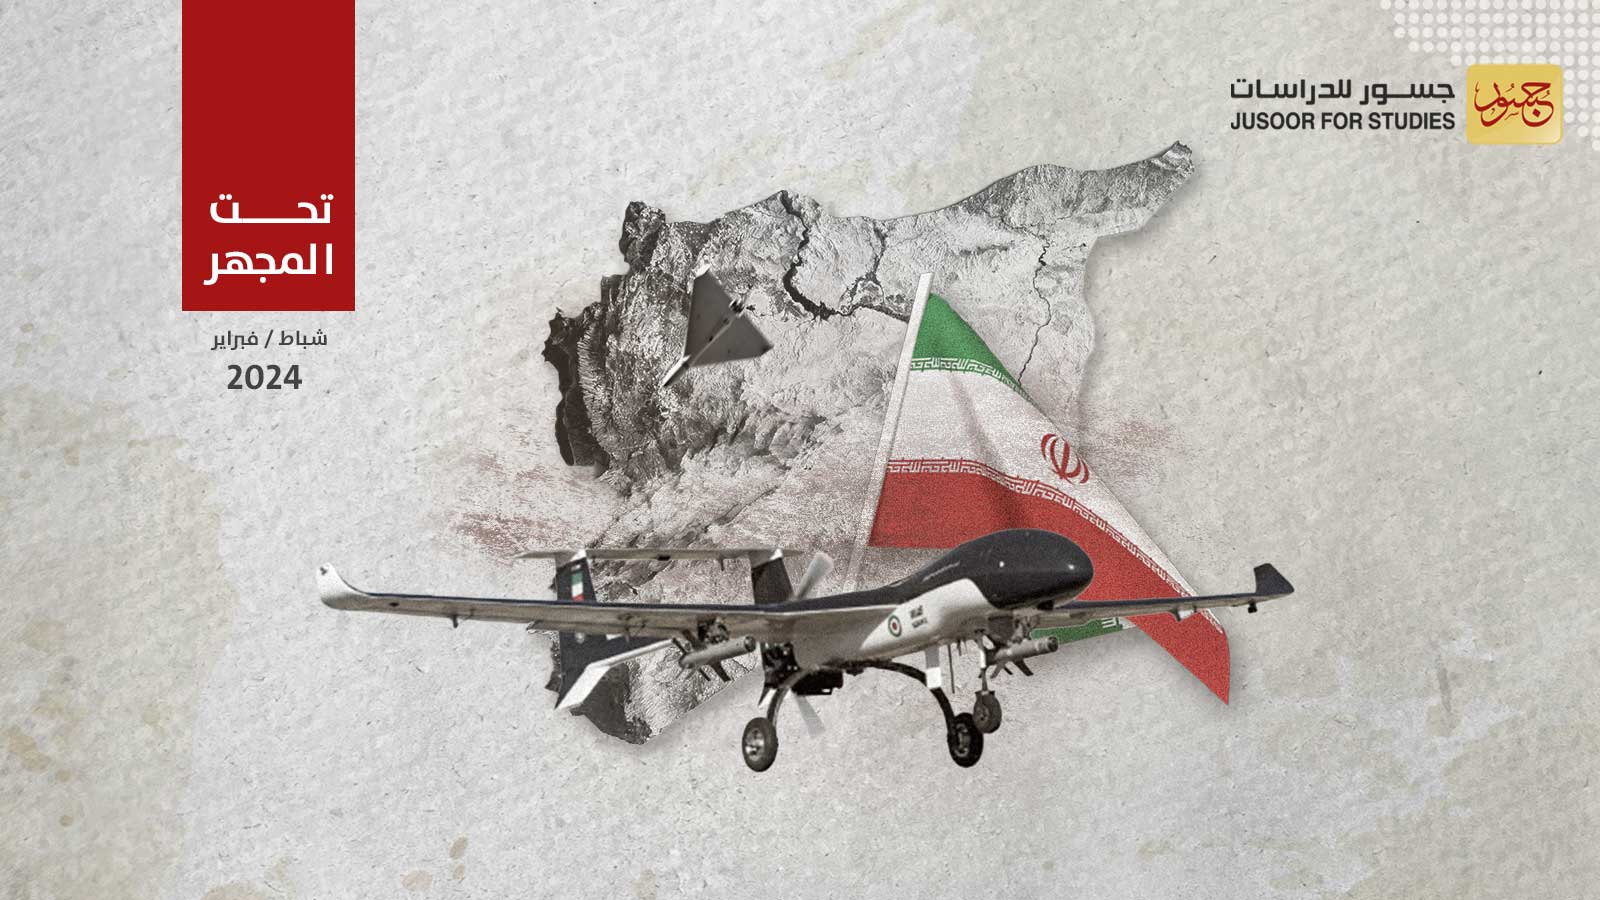 استخدام إيران المكثَّف للطائرات المسيَّرة في سورية ما الرسائل والتأثير؟